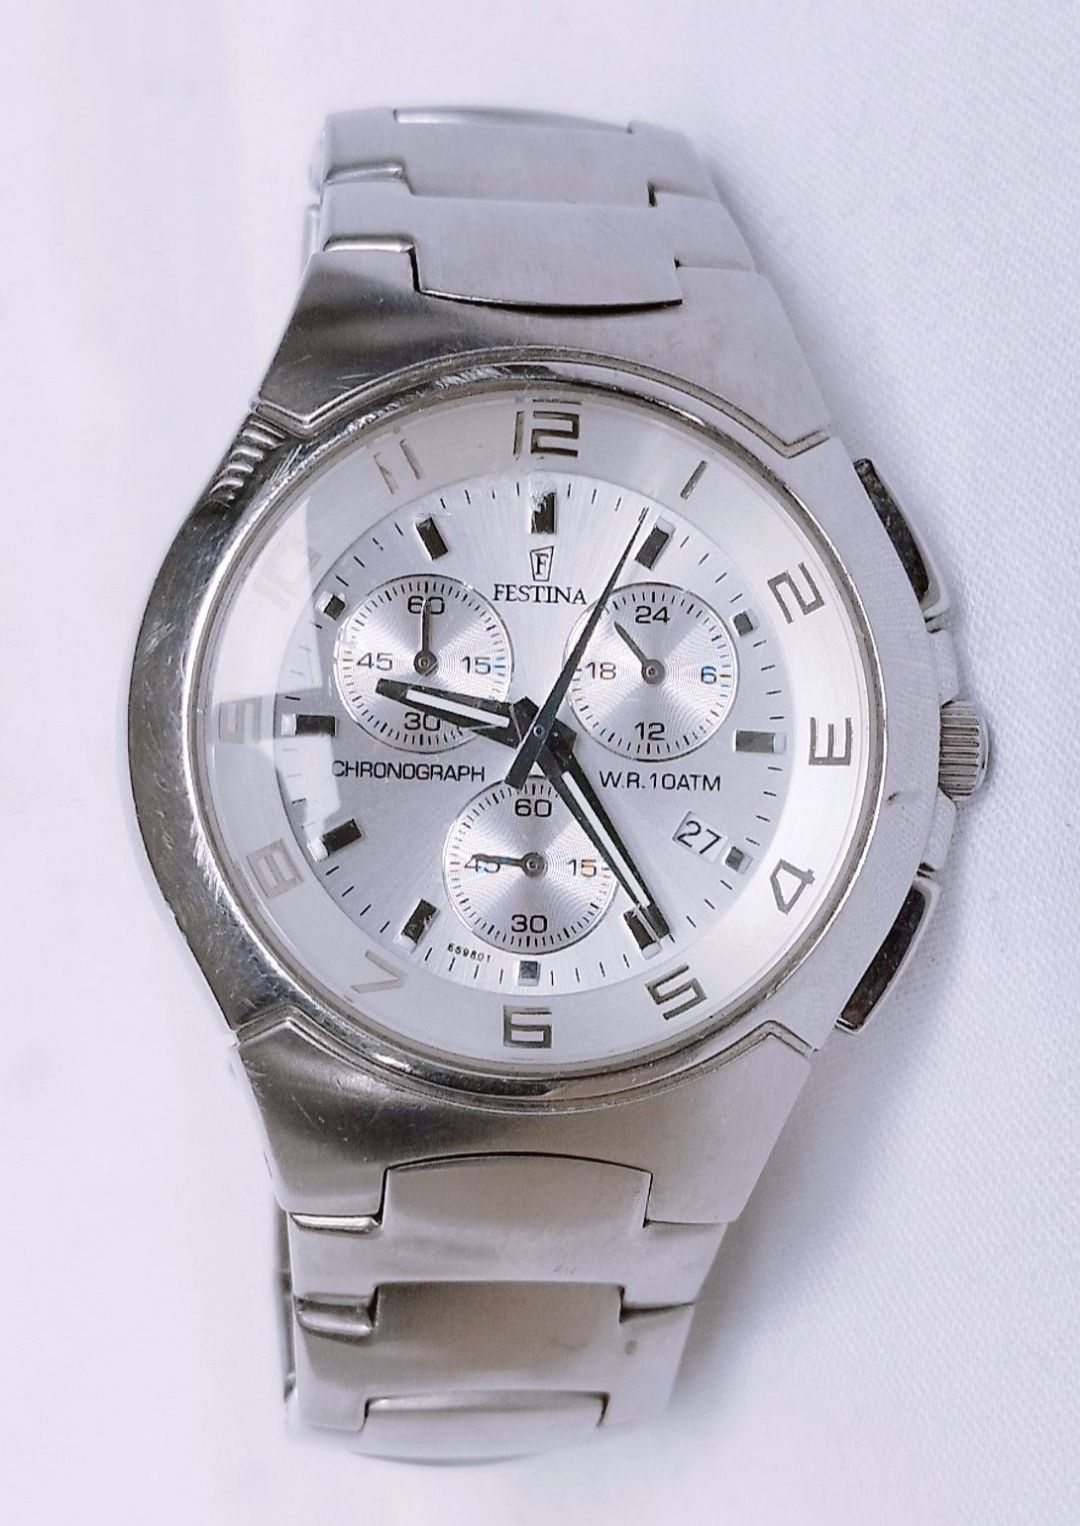 Ceas bărbătesc Festina F6698, cronograf, Quartz, oțel inoxidabil.